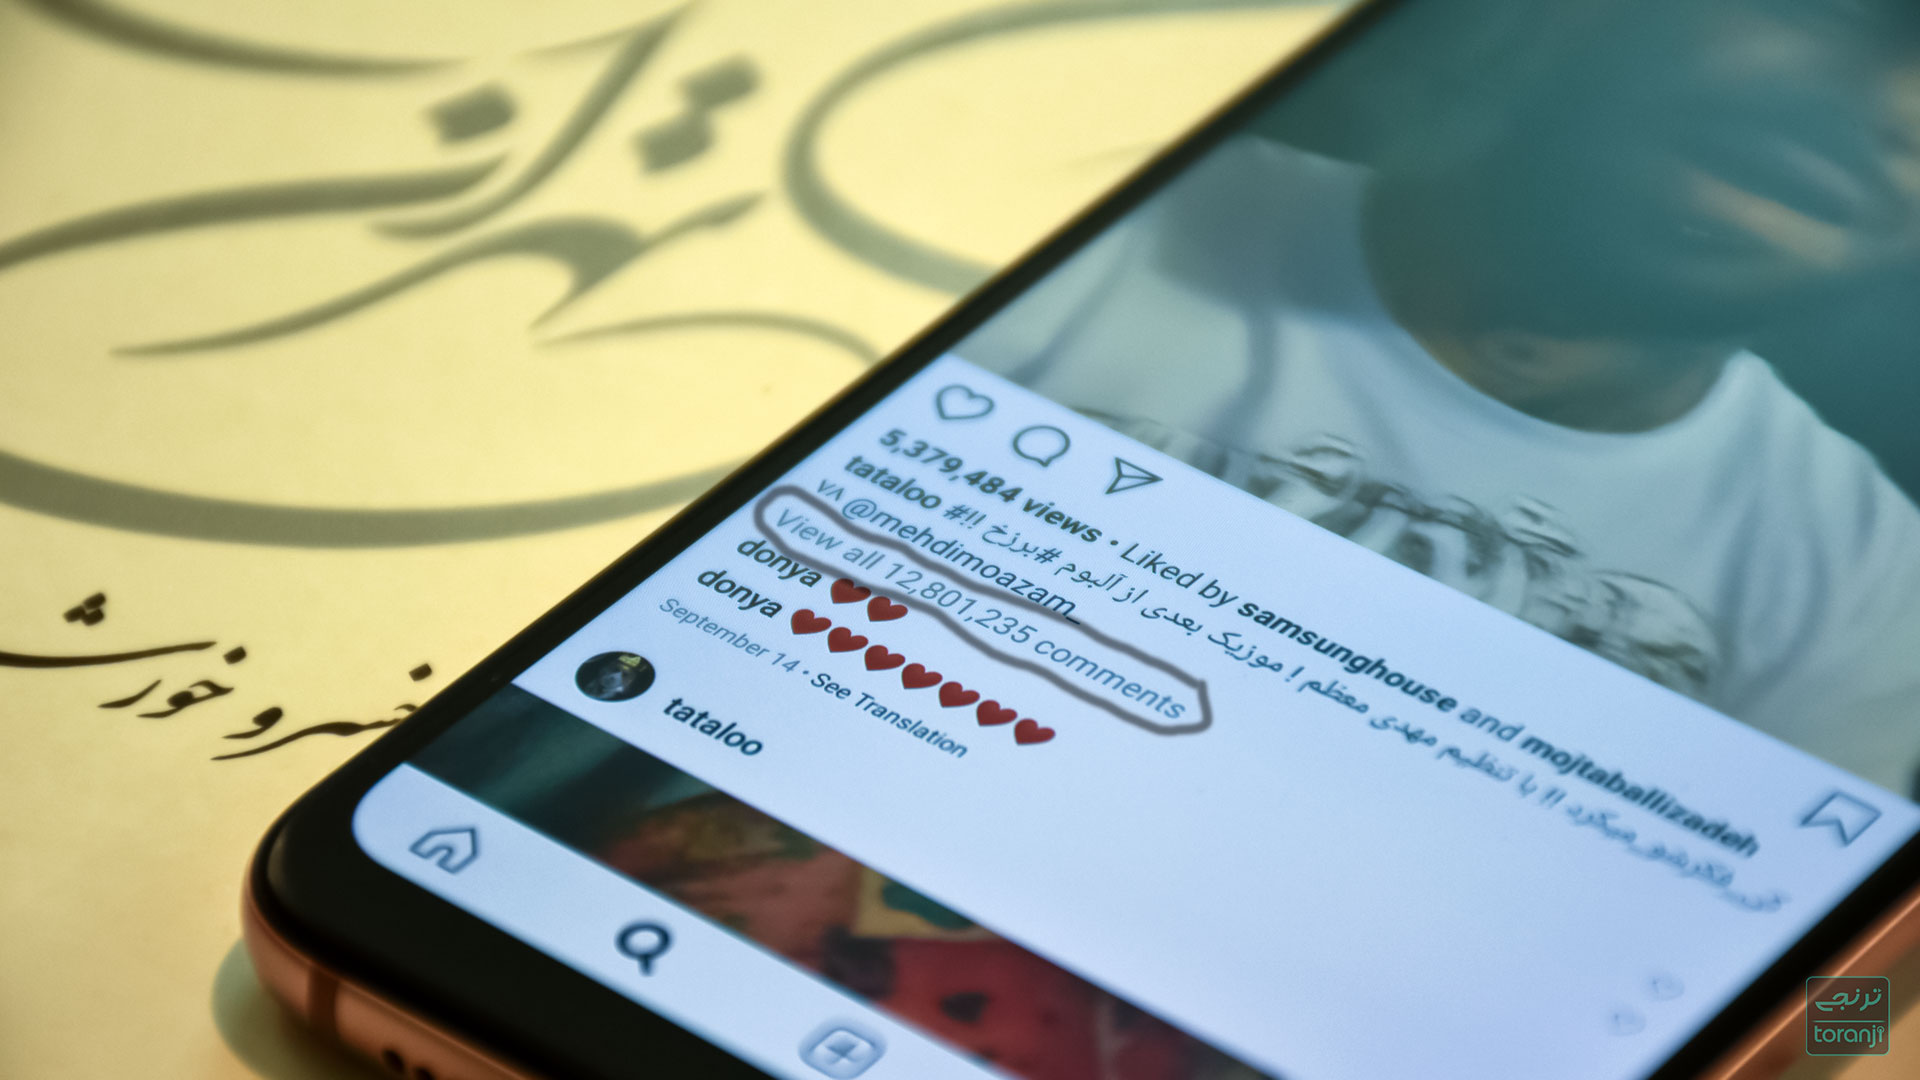 صفحه اینستاگرام امیر تتلو یعنی دارنده دو رکورد این شبکه اجتماعی، مسدود شد